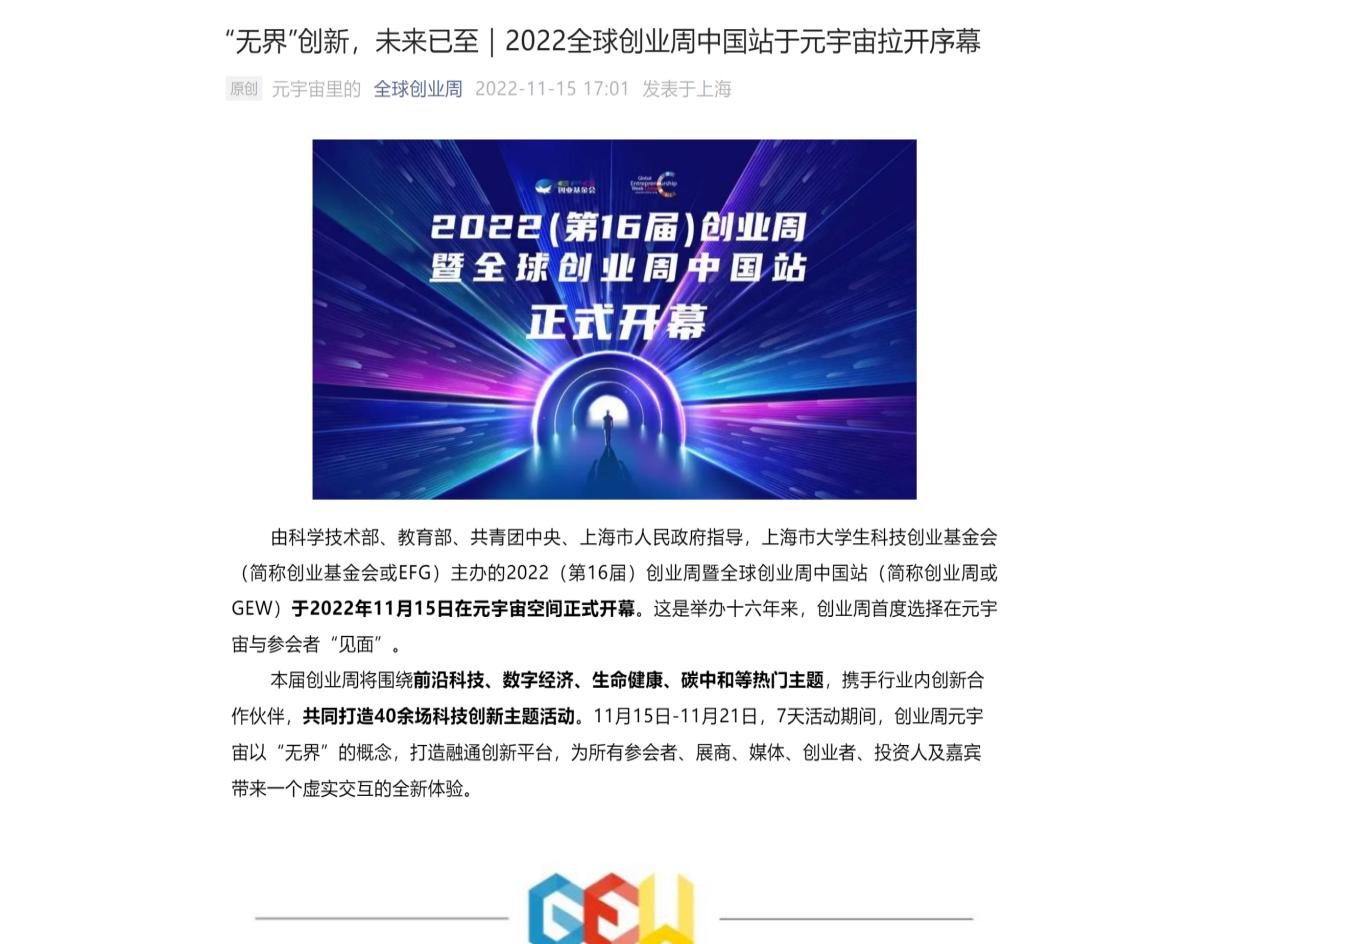 3E技术创新板登入全球创业周中国站